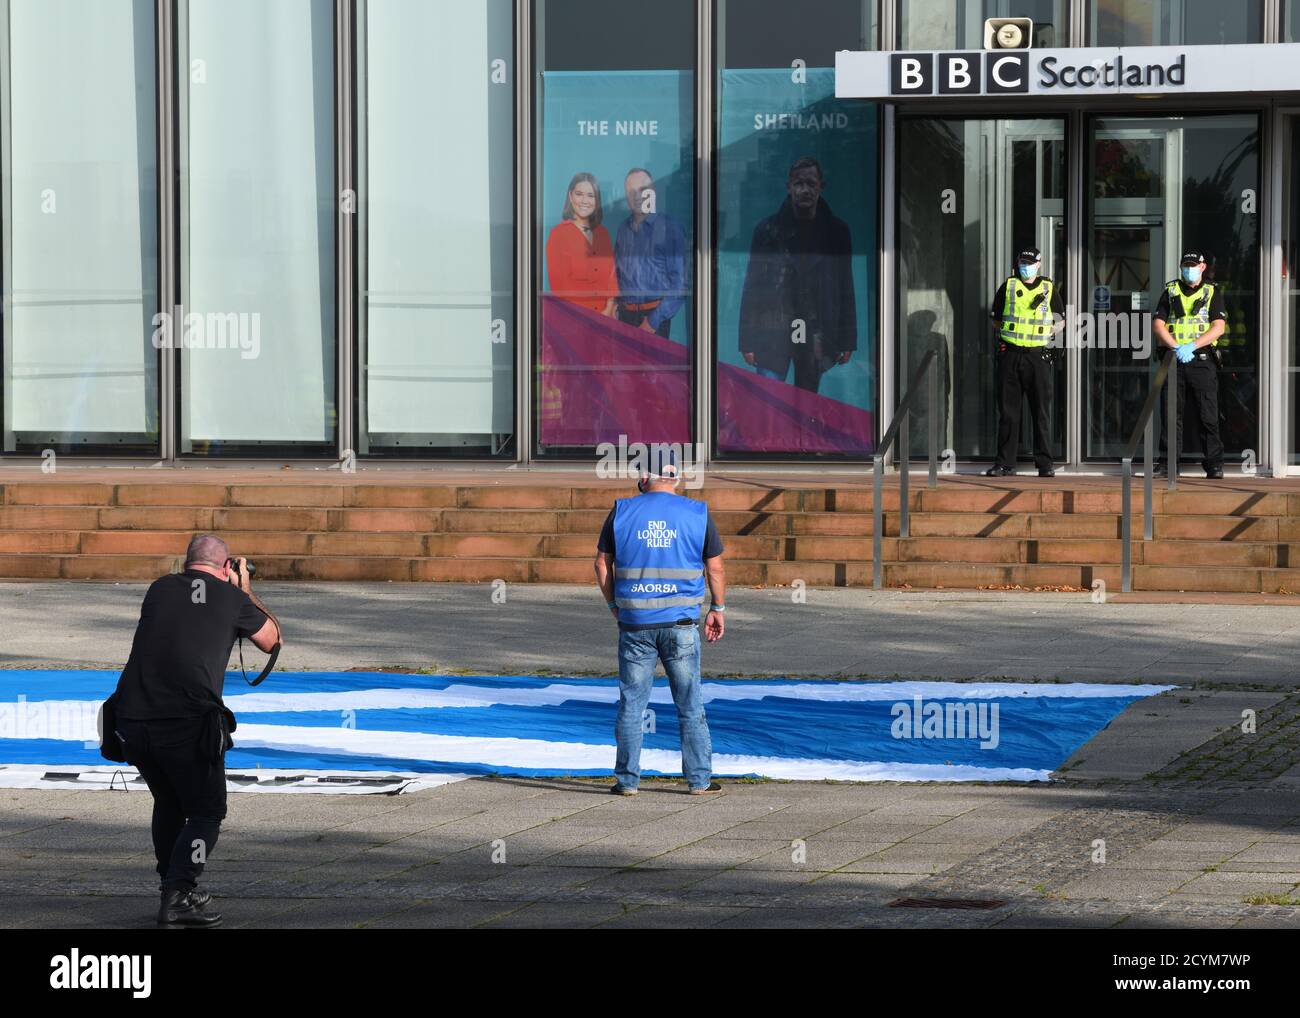 Ein einziger Protestler nach sozialer Distanzierung demonstriert gegen unlautere Berichterstattung am polizeigeschützten Eingang der BBC Scotland in Glasgow. Stockfoto